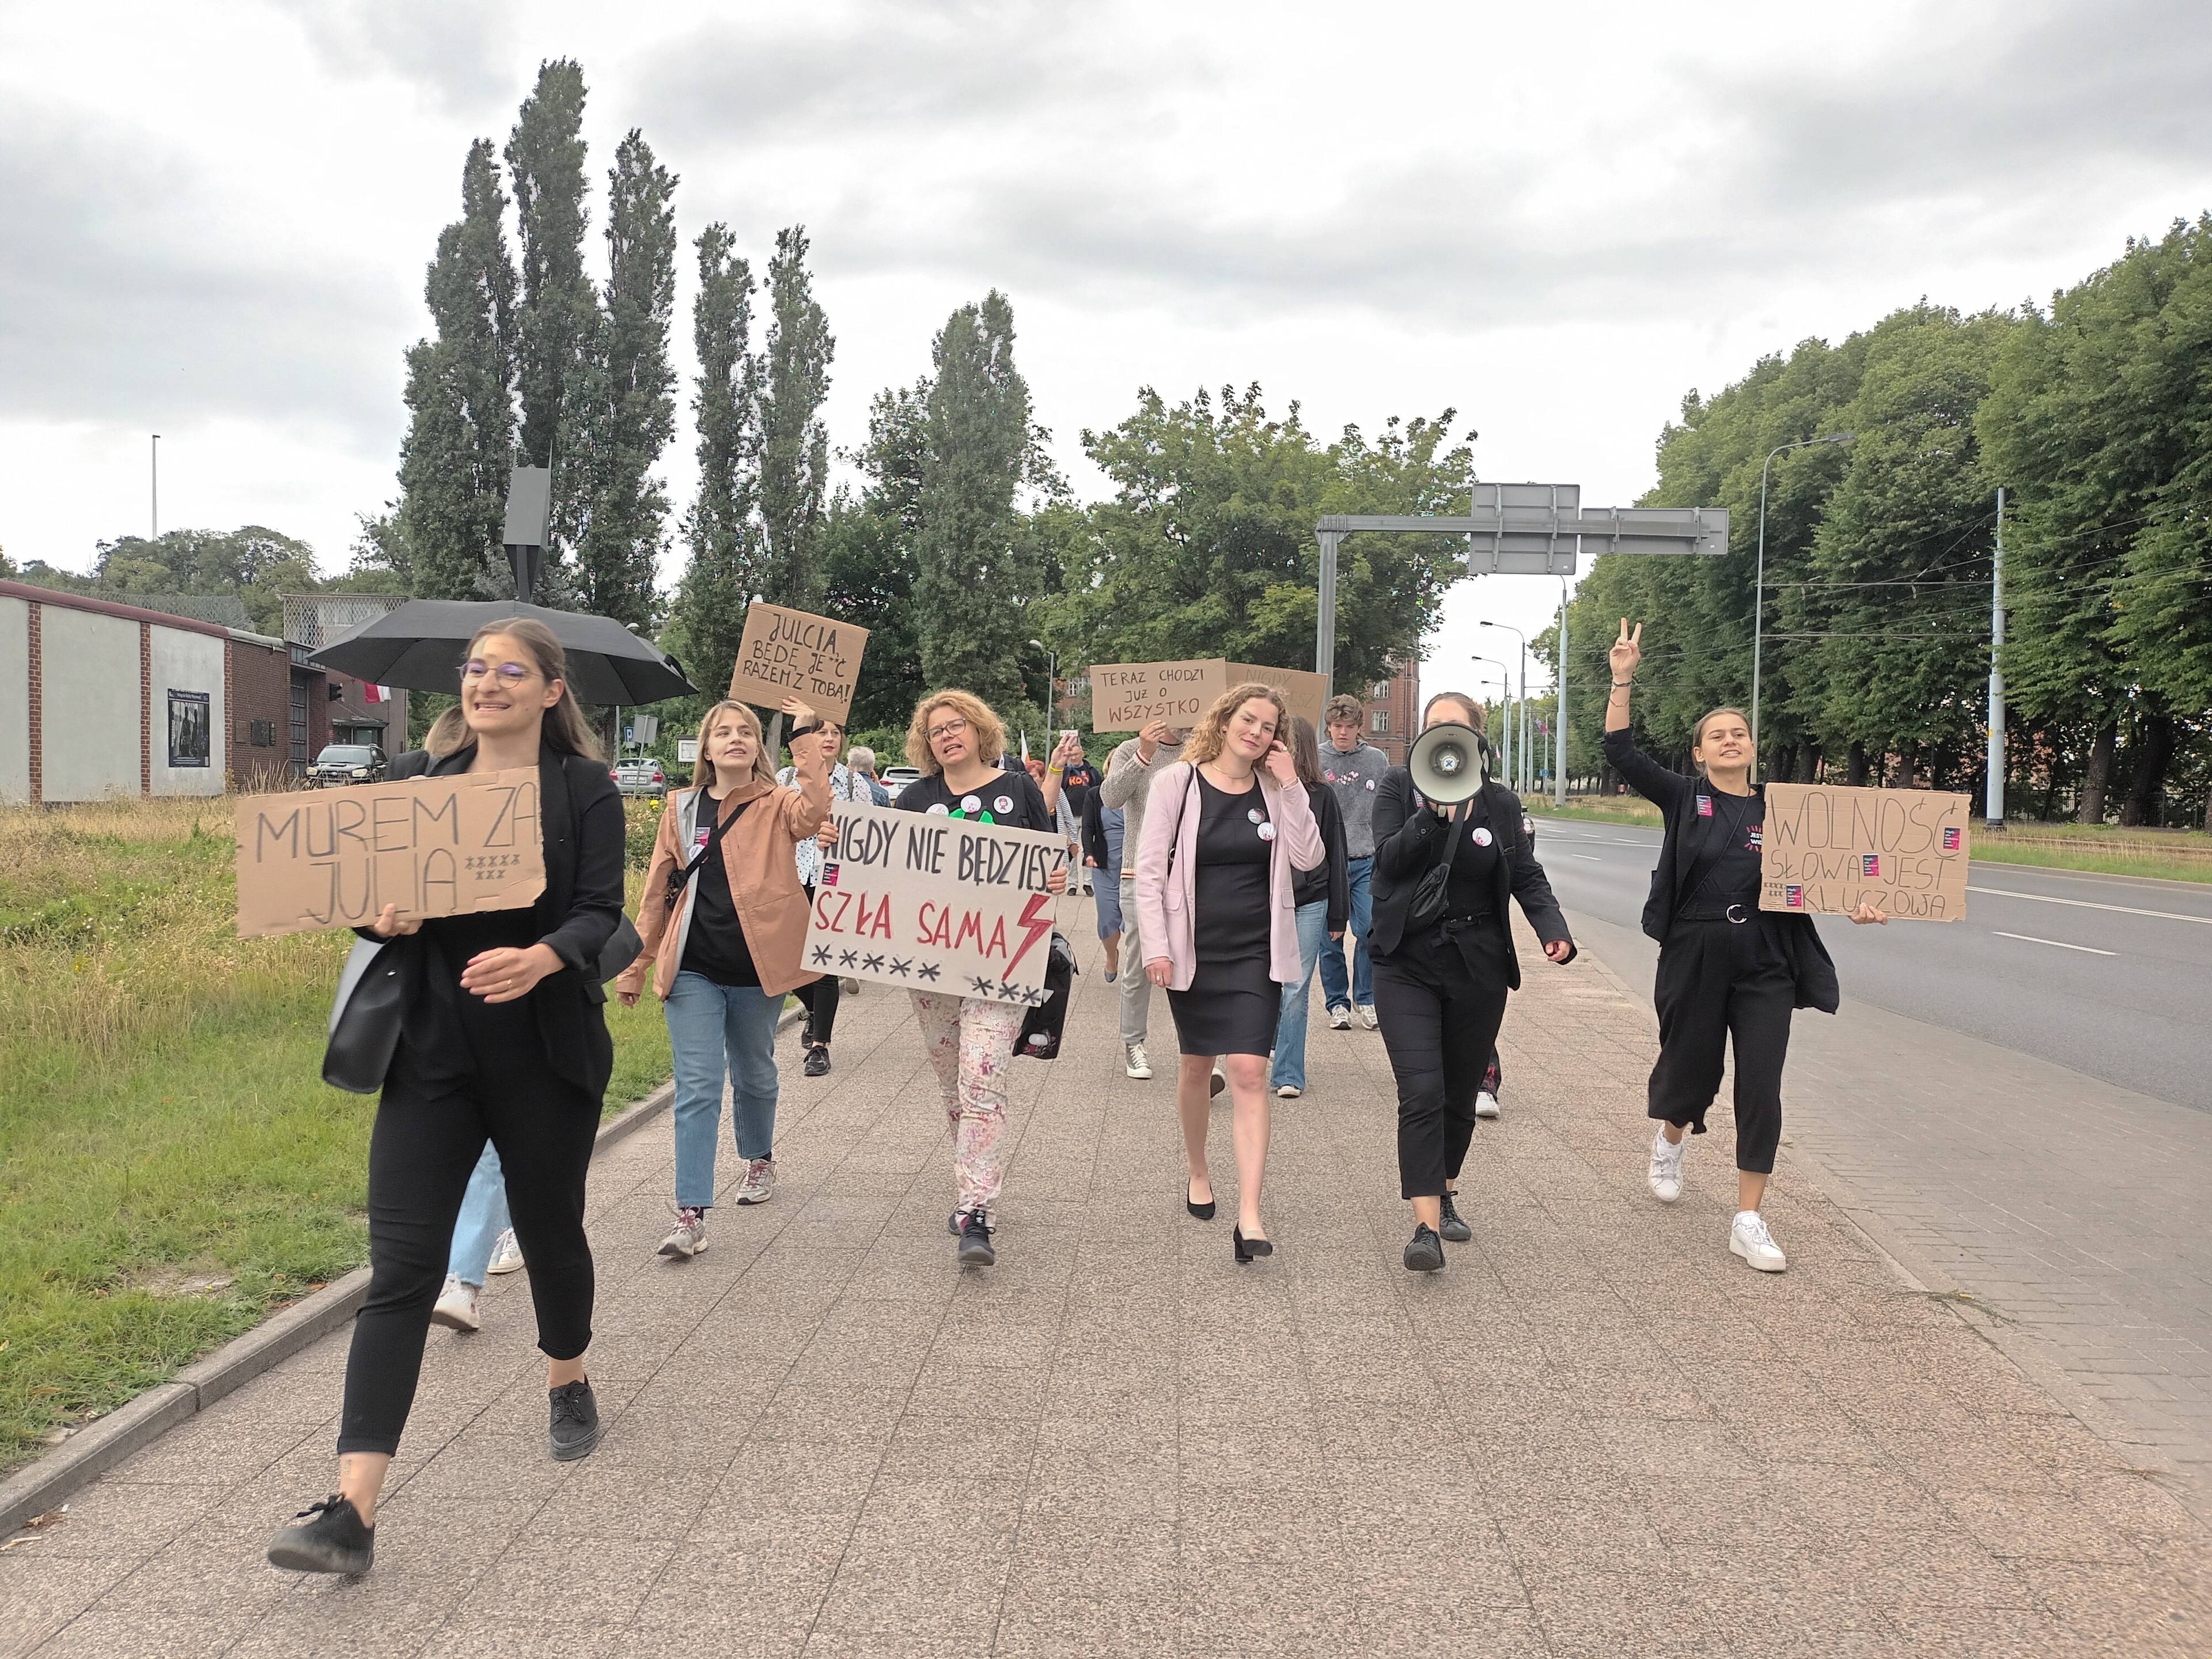 Grupa kobiet i mężczyzn z transparentem "Nigdy nie będziesz szła sama" idzie ulicą